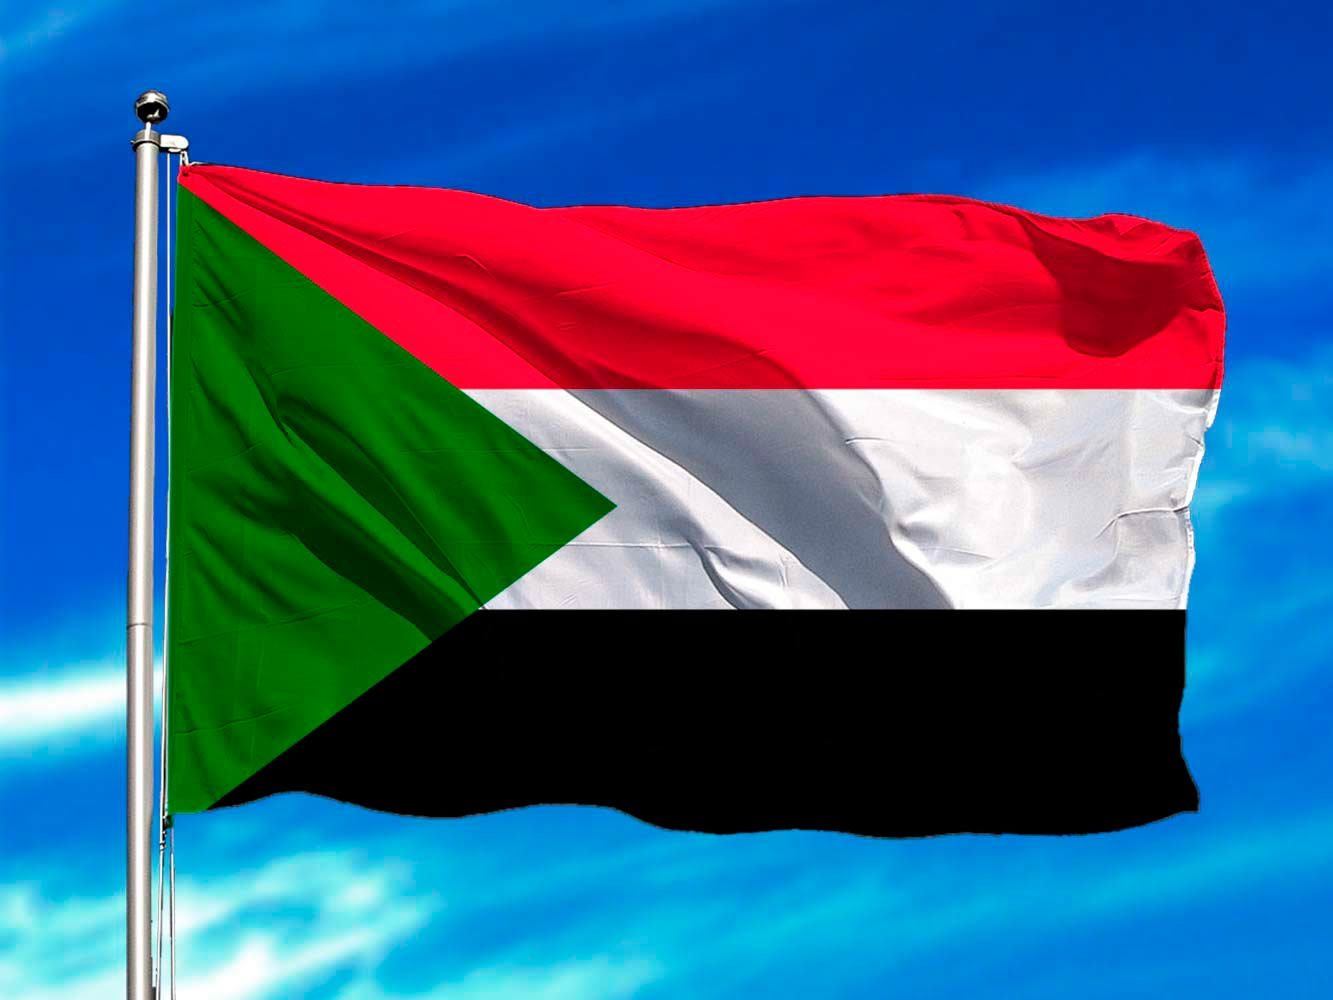 El primer ministro sudanés reafirma la importancia de la cooperación entre civiles y fuerzas de seguridad